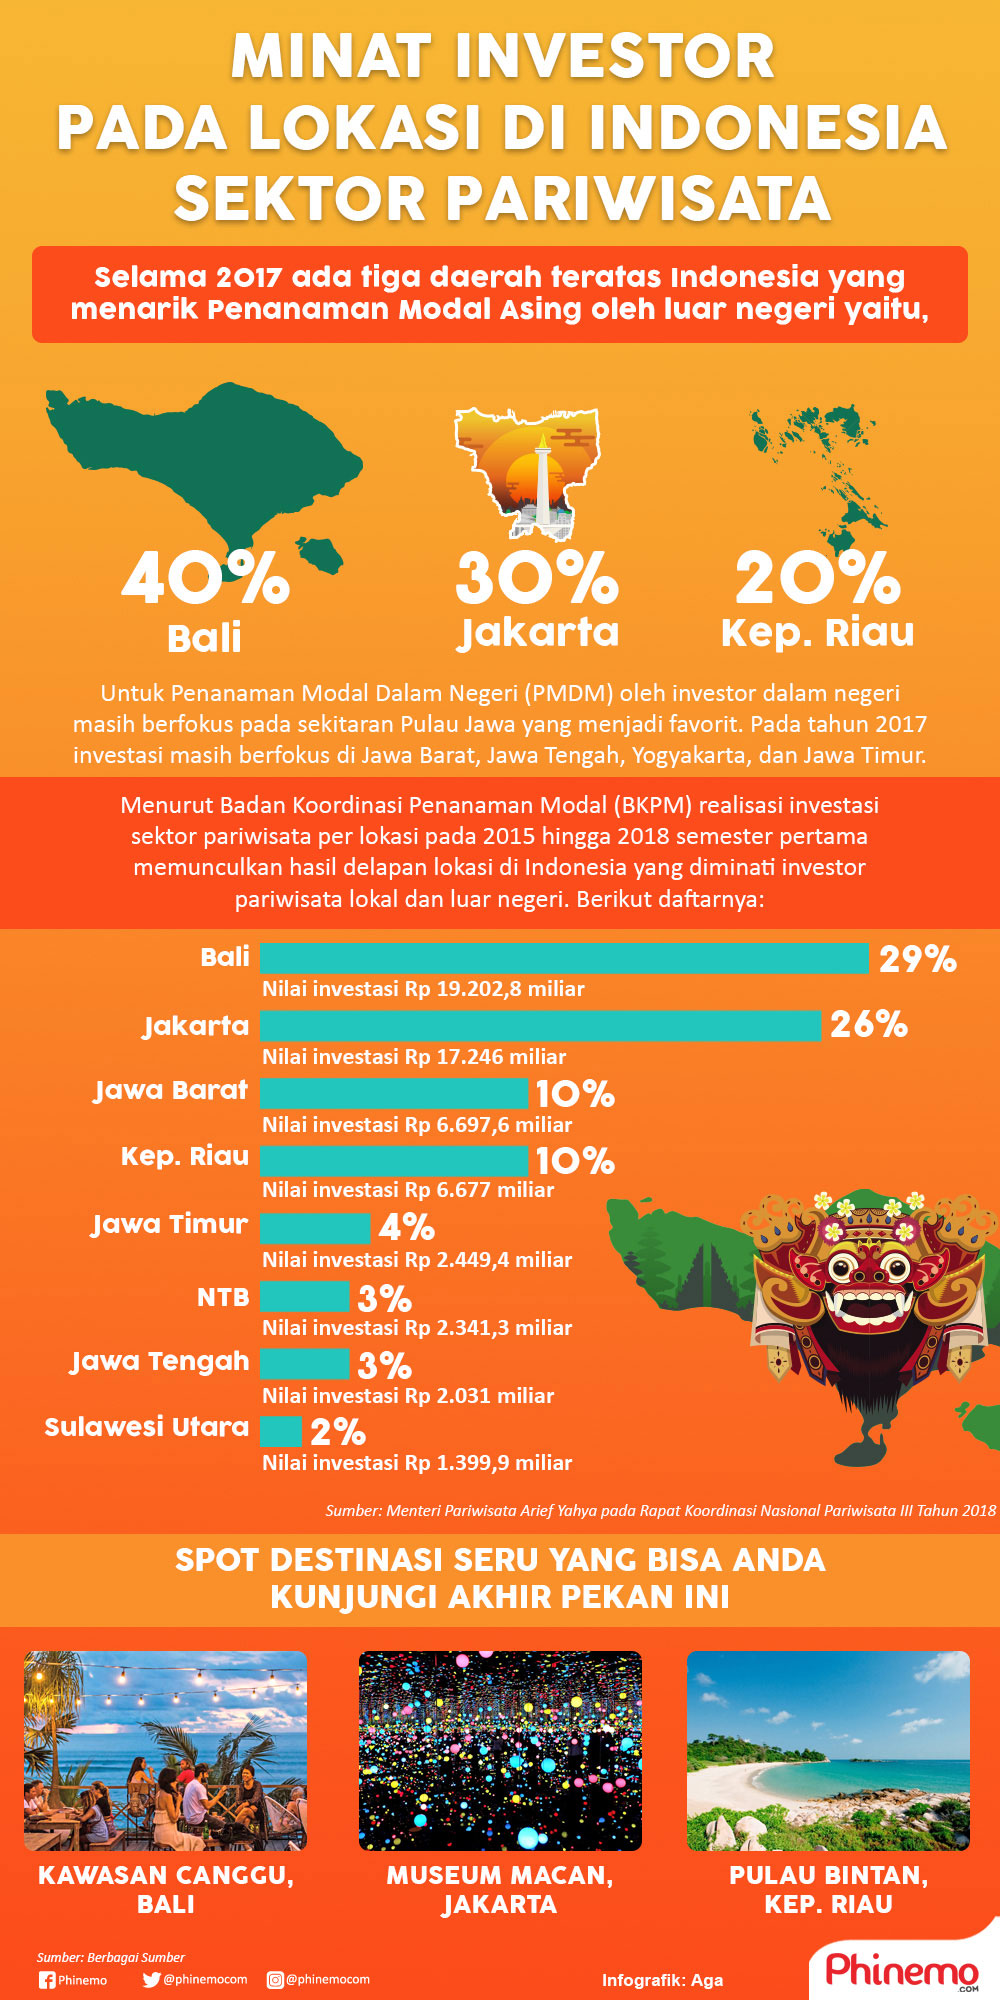 Infografik Investor Bidang Pariwisata Indonesia Semakin Meningkat Setiap Tahunnya, Berikut Daftar Lokasinya. Infografik oleh Aga